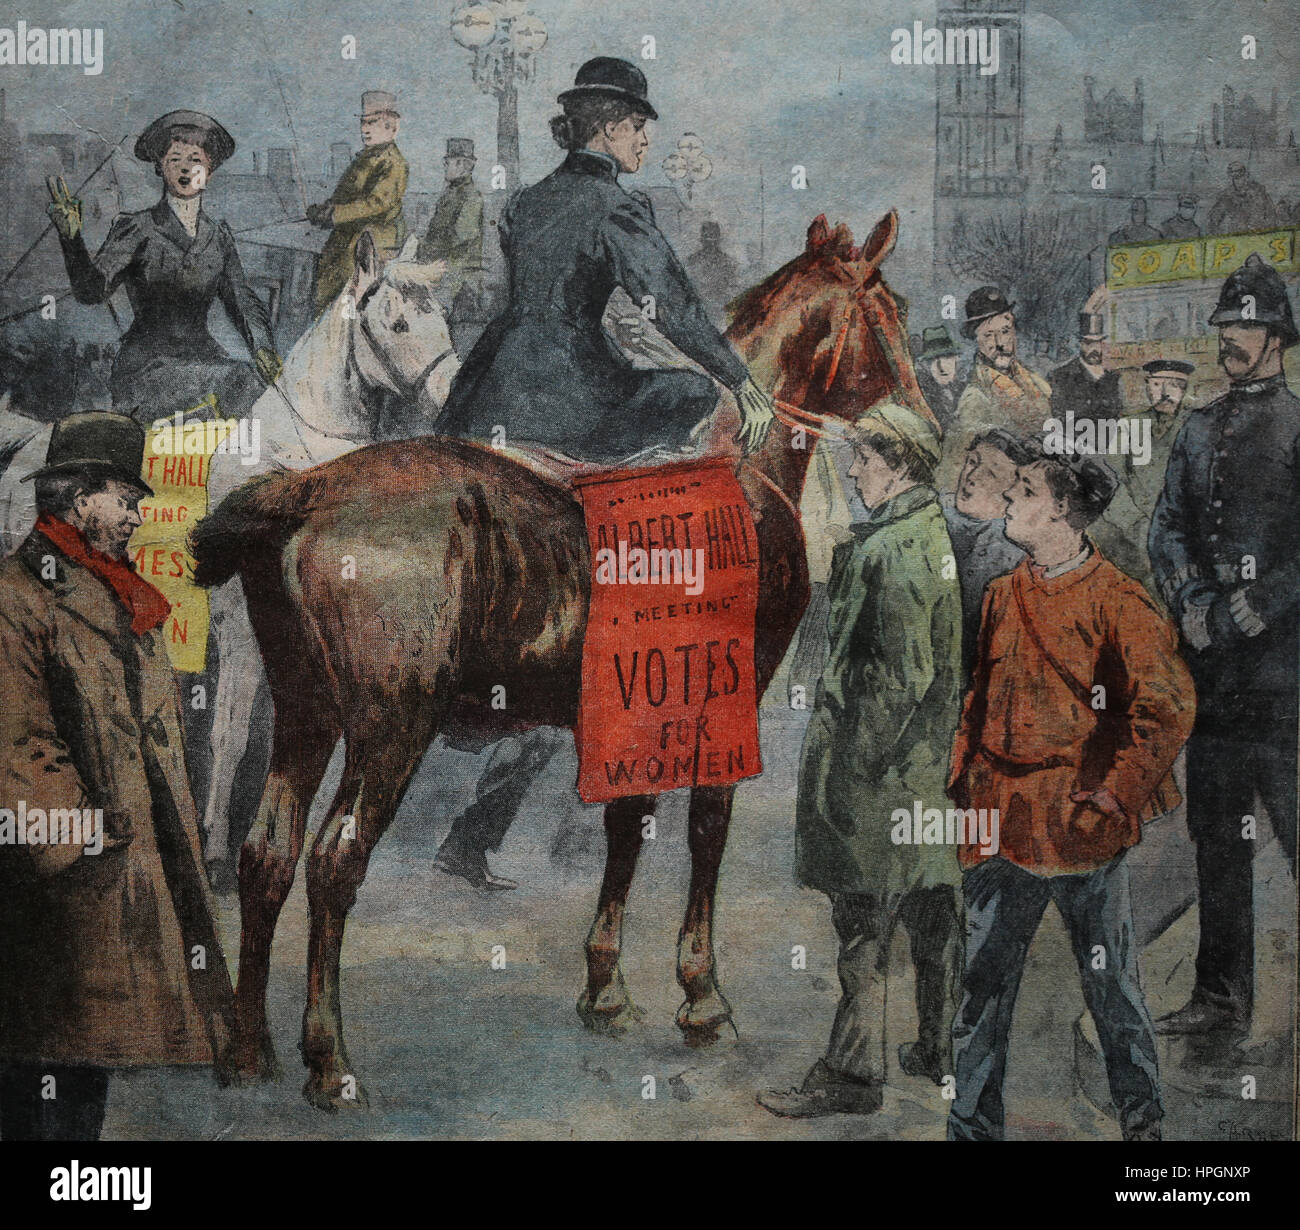 Suffragete manifestation à Londres. Grande-bretagne, 1905. Le Petit Parisien. Supplément littéraire illustre. 15 novembre, 1905. Banque D'Images